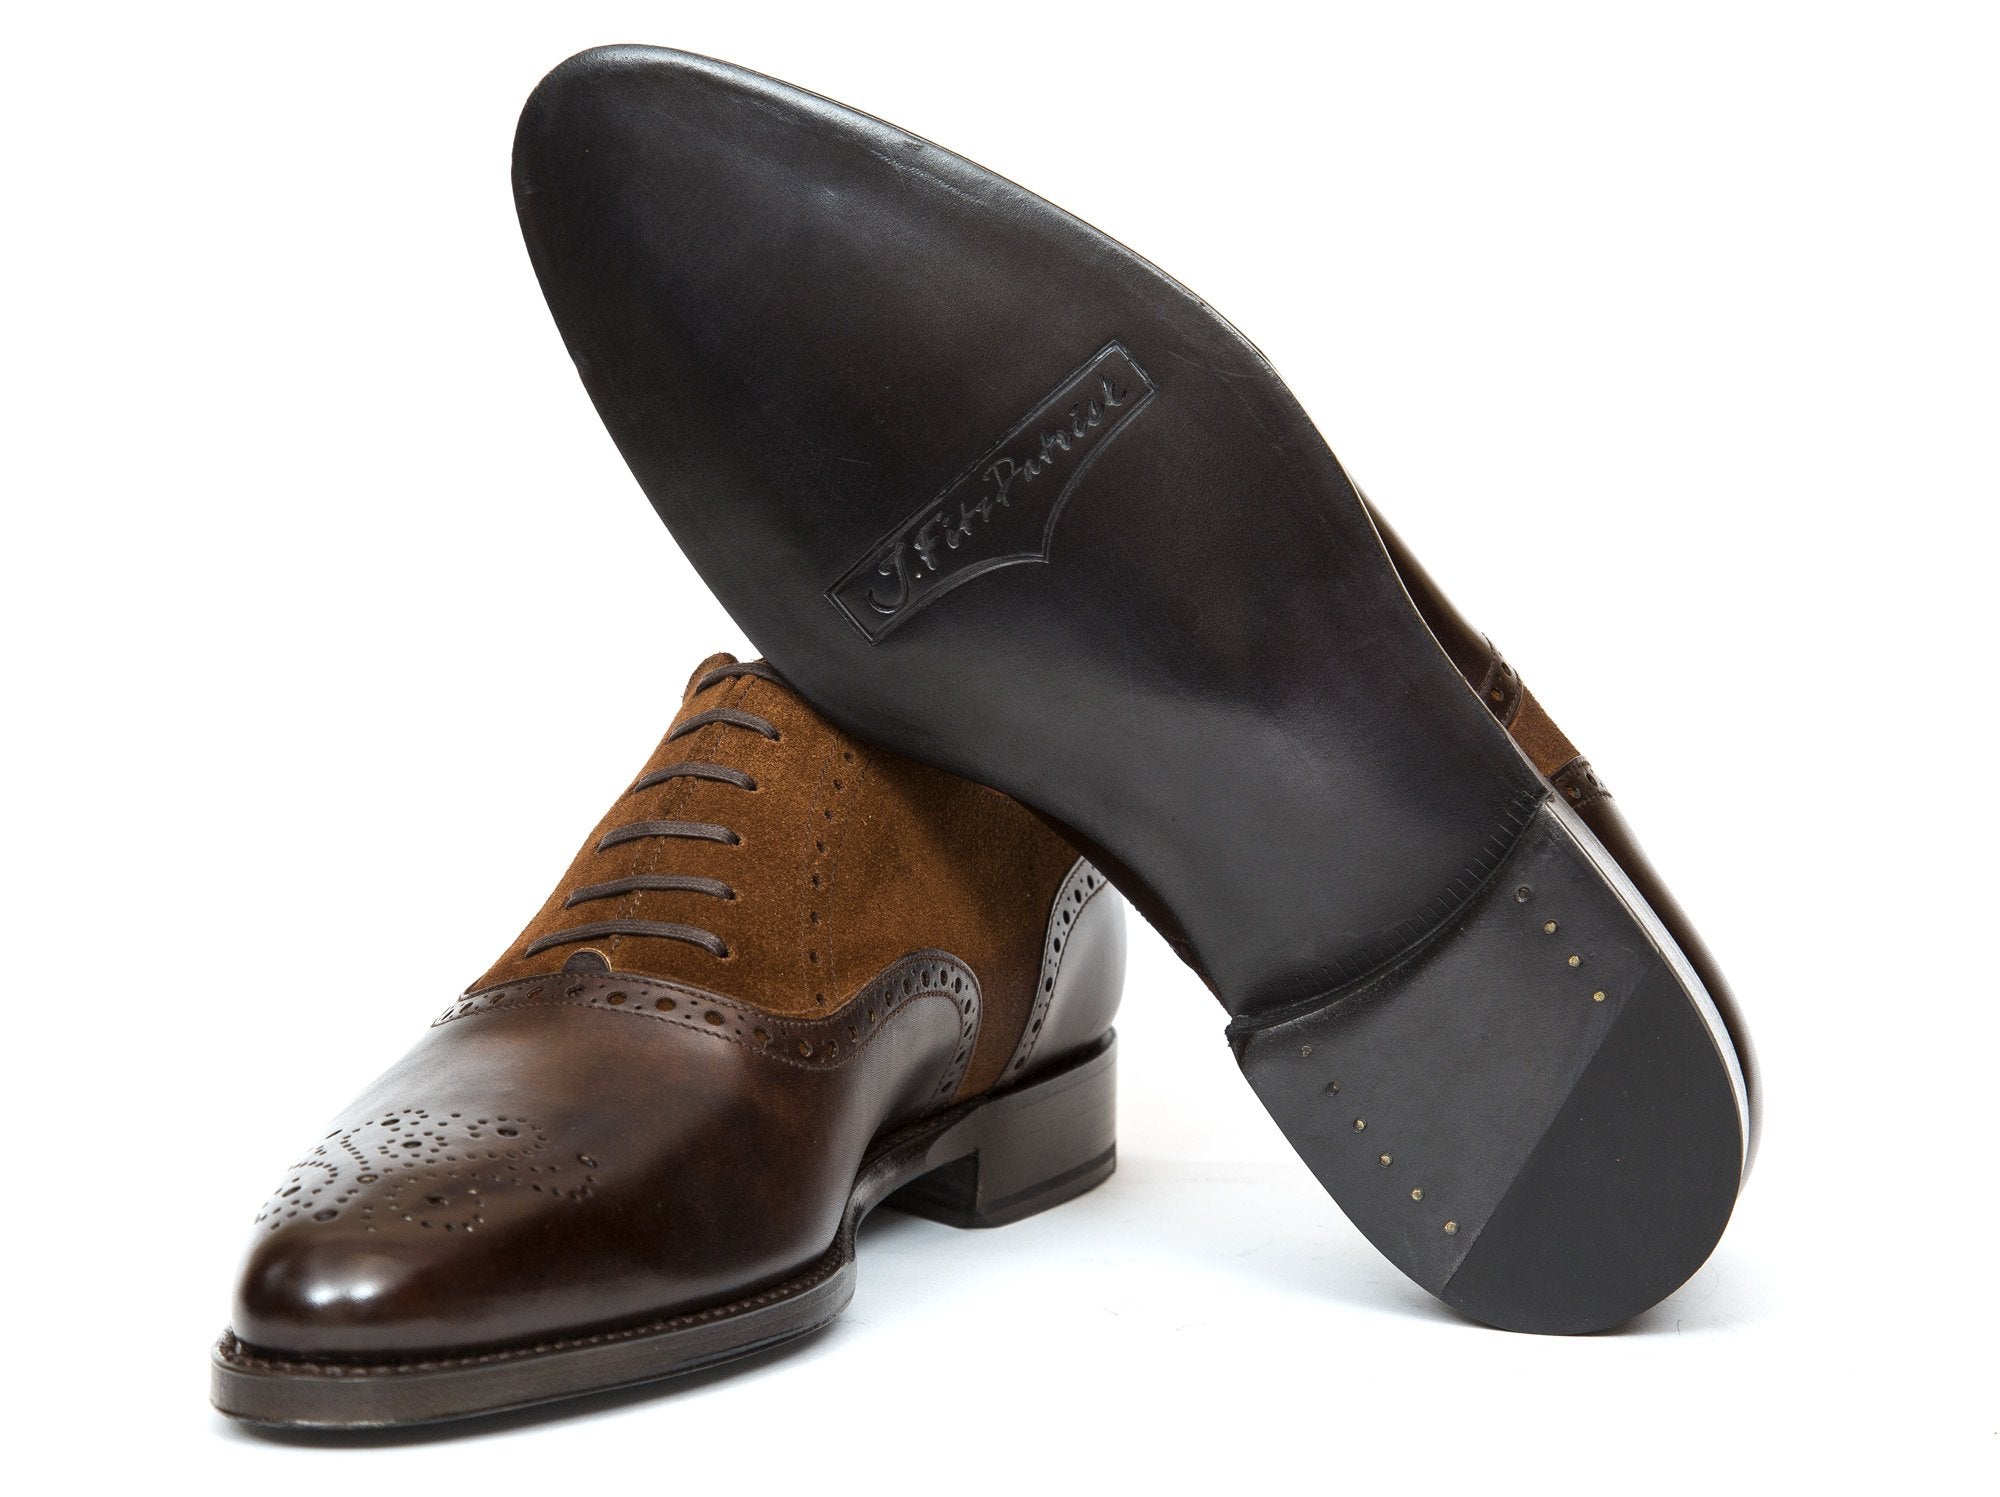 J.FitzPatrick Footwear - Wallingford - Dark Brown Museum Calf / Snuff Suede - JKF Last